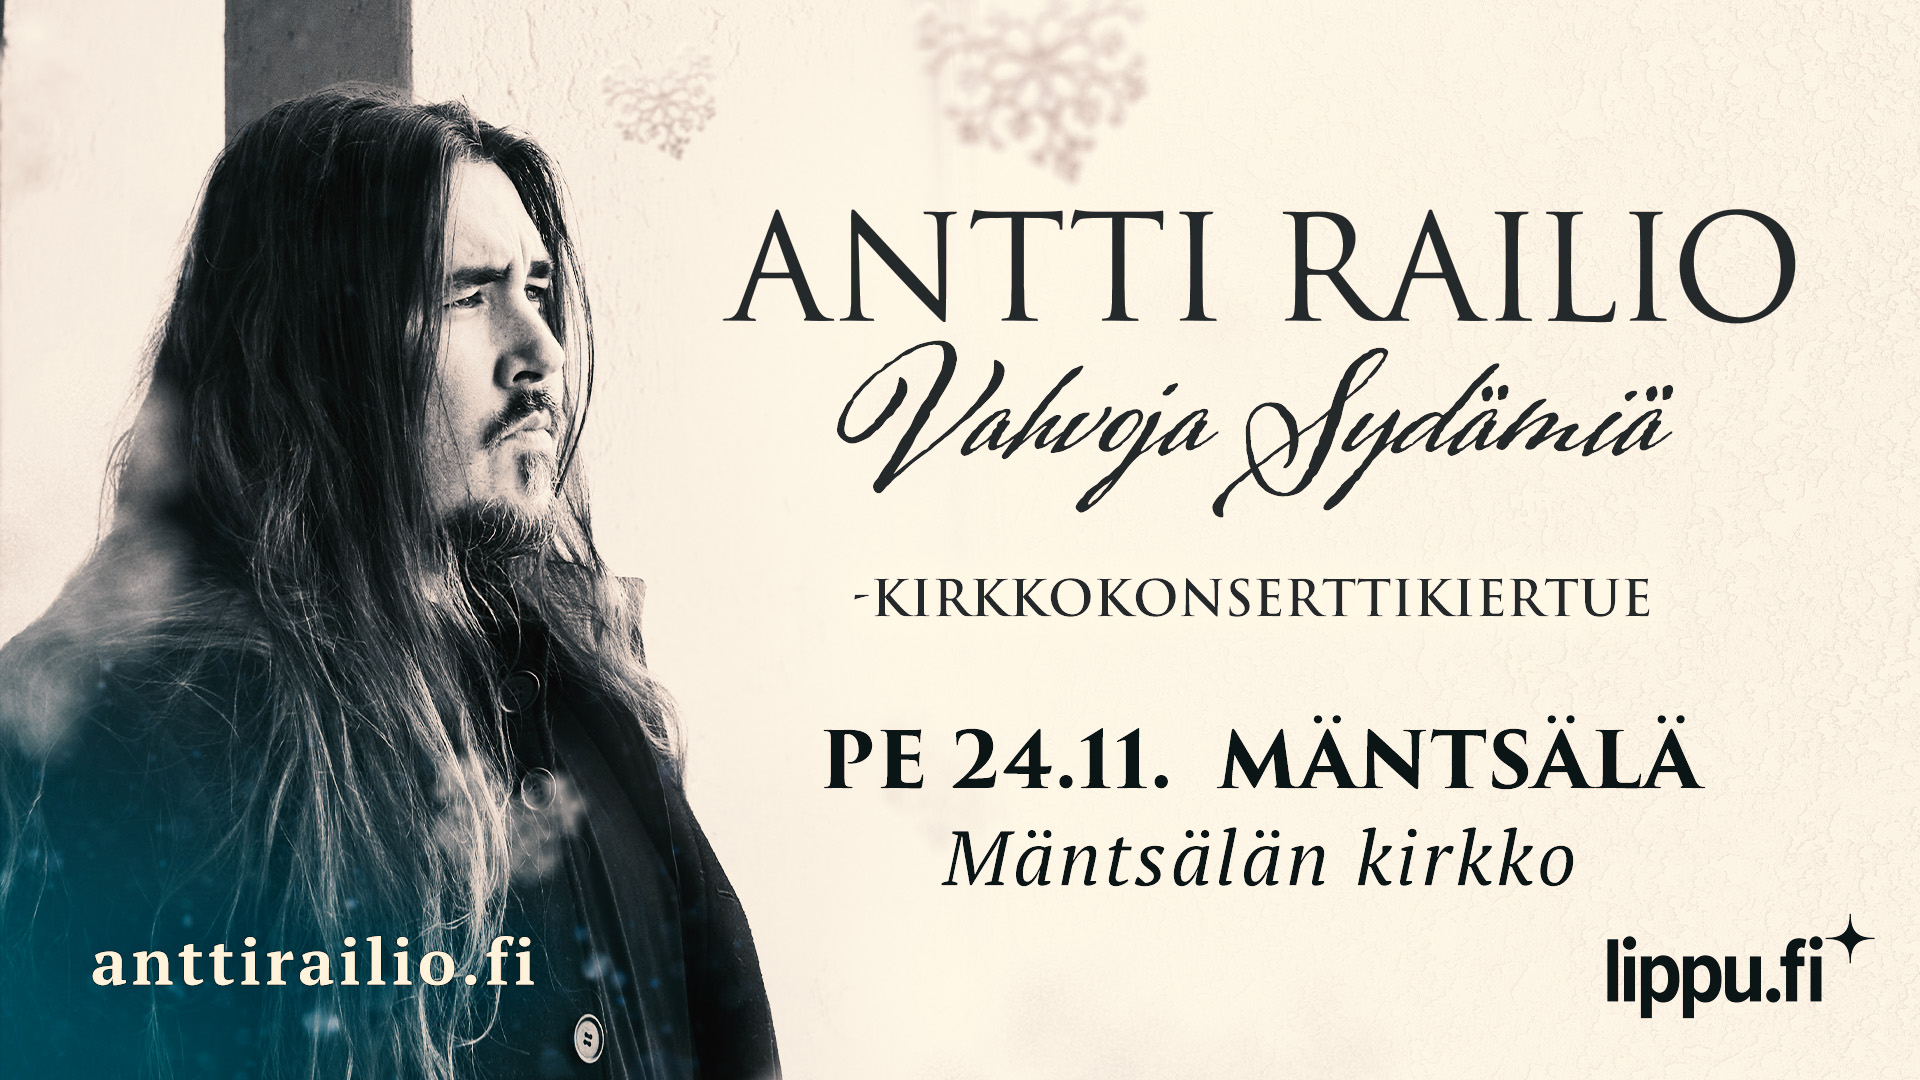 Antti Railion kasvokuva ja lisäksi teksti Antti Railio Vahvoja sydämiä -kirkkokonserttikiertue pe 24.11. Mä...